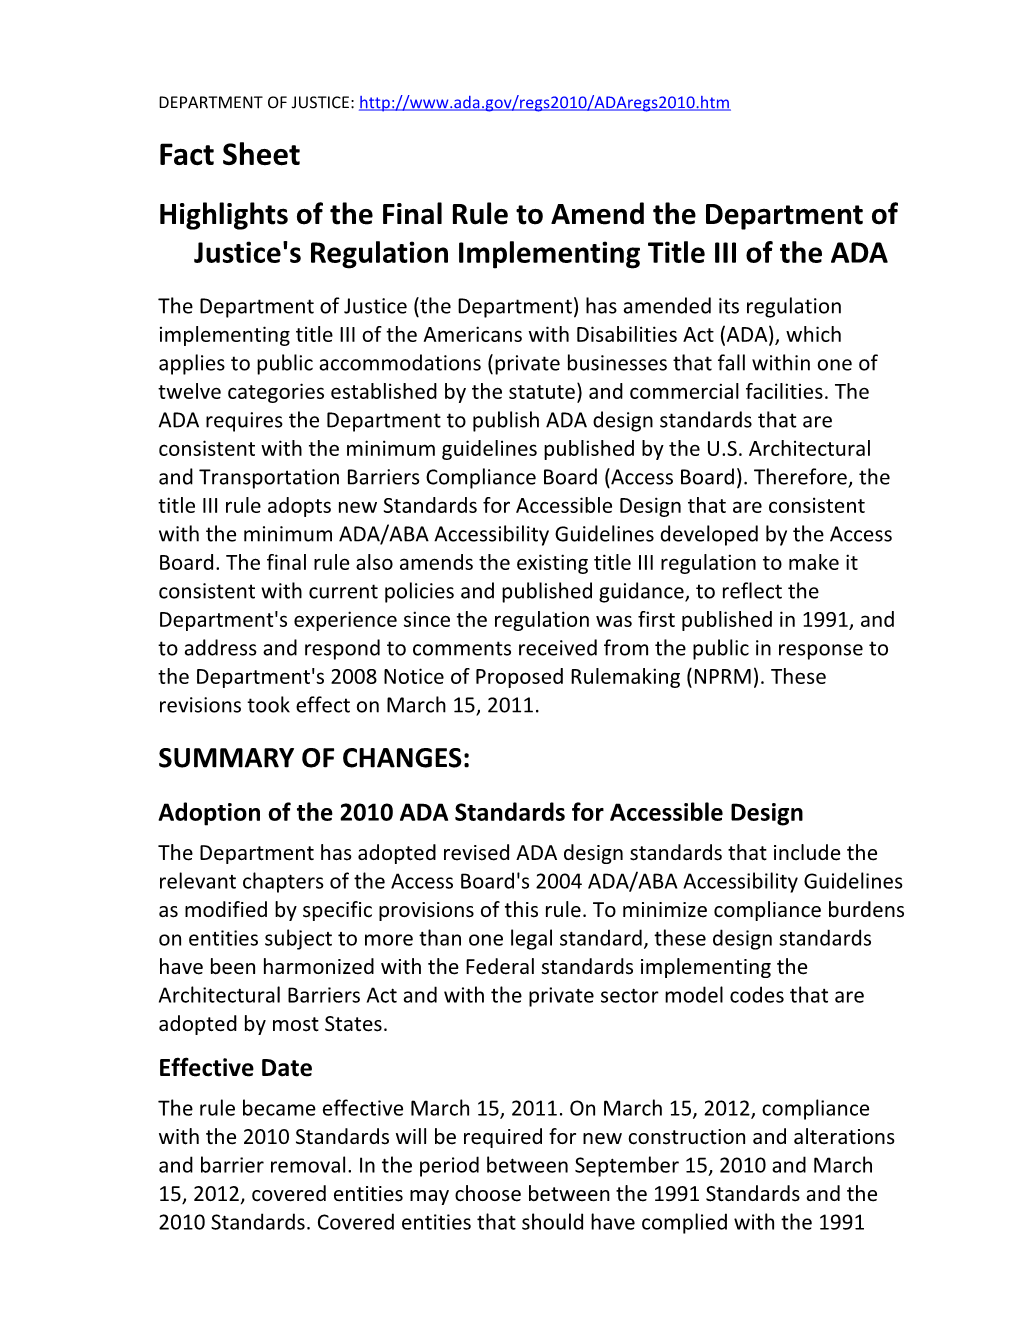 ADA Title III Fact Sheet - May 2013